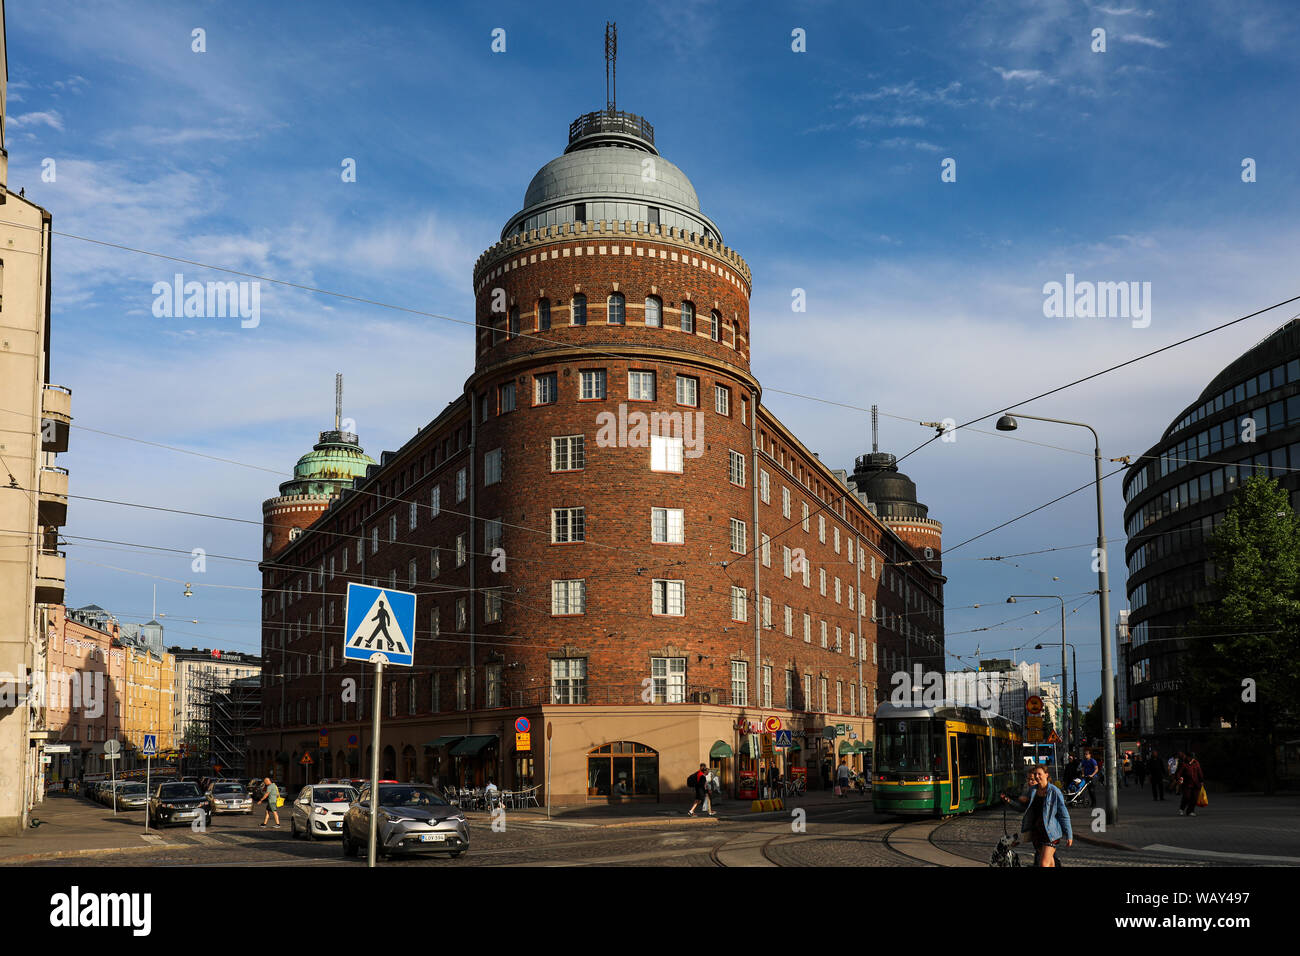 Arenan talo triangolare edificio residenziale dall'architetto Lars Sonck, Hakaniemi nel distretto di Helsinki, Finlandia Foto Stock